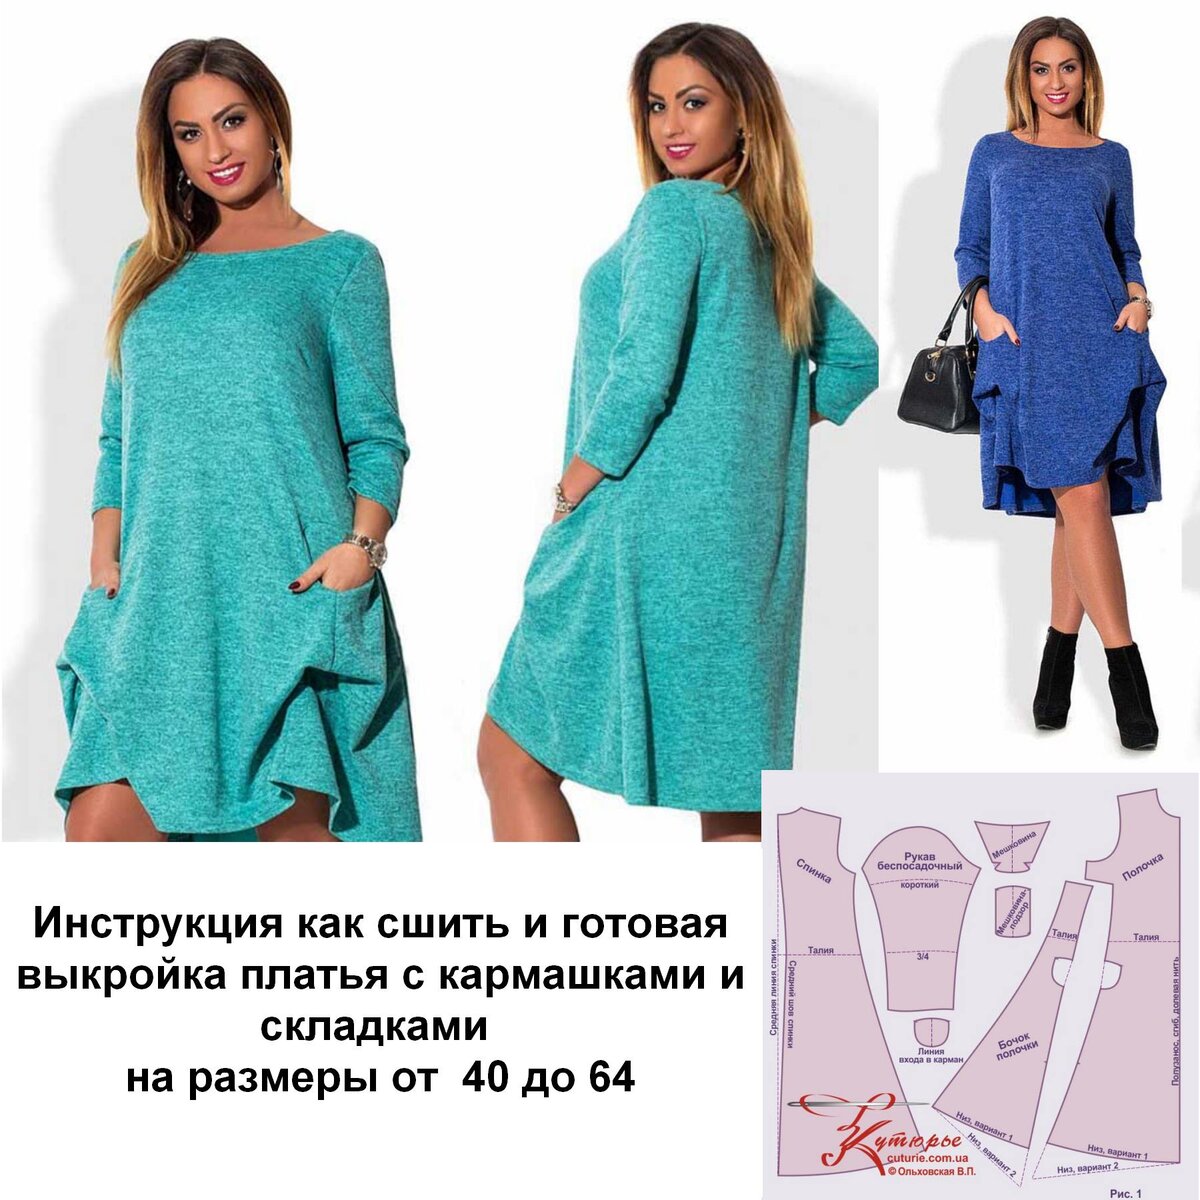 Выкройка бумажная KIS платье женское МОД 4975 в натуральную величину с припусками 54 размер